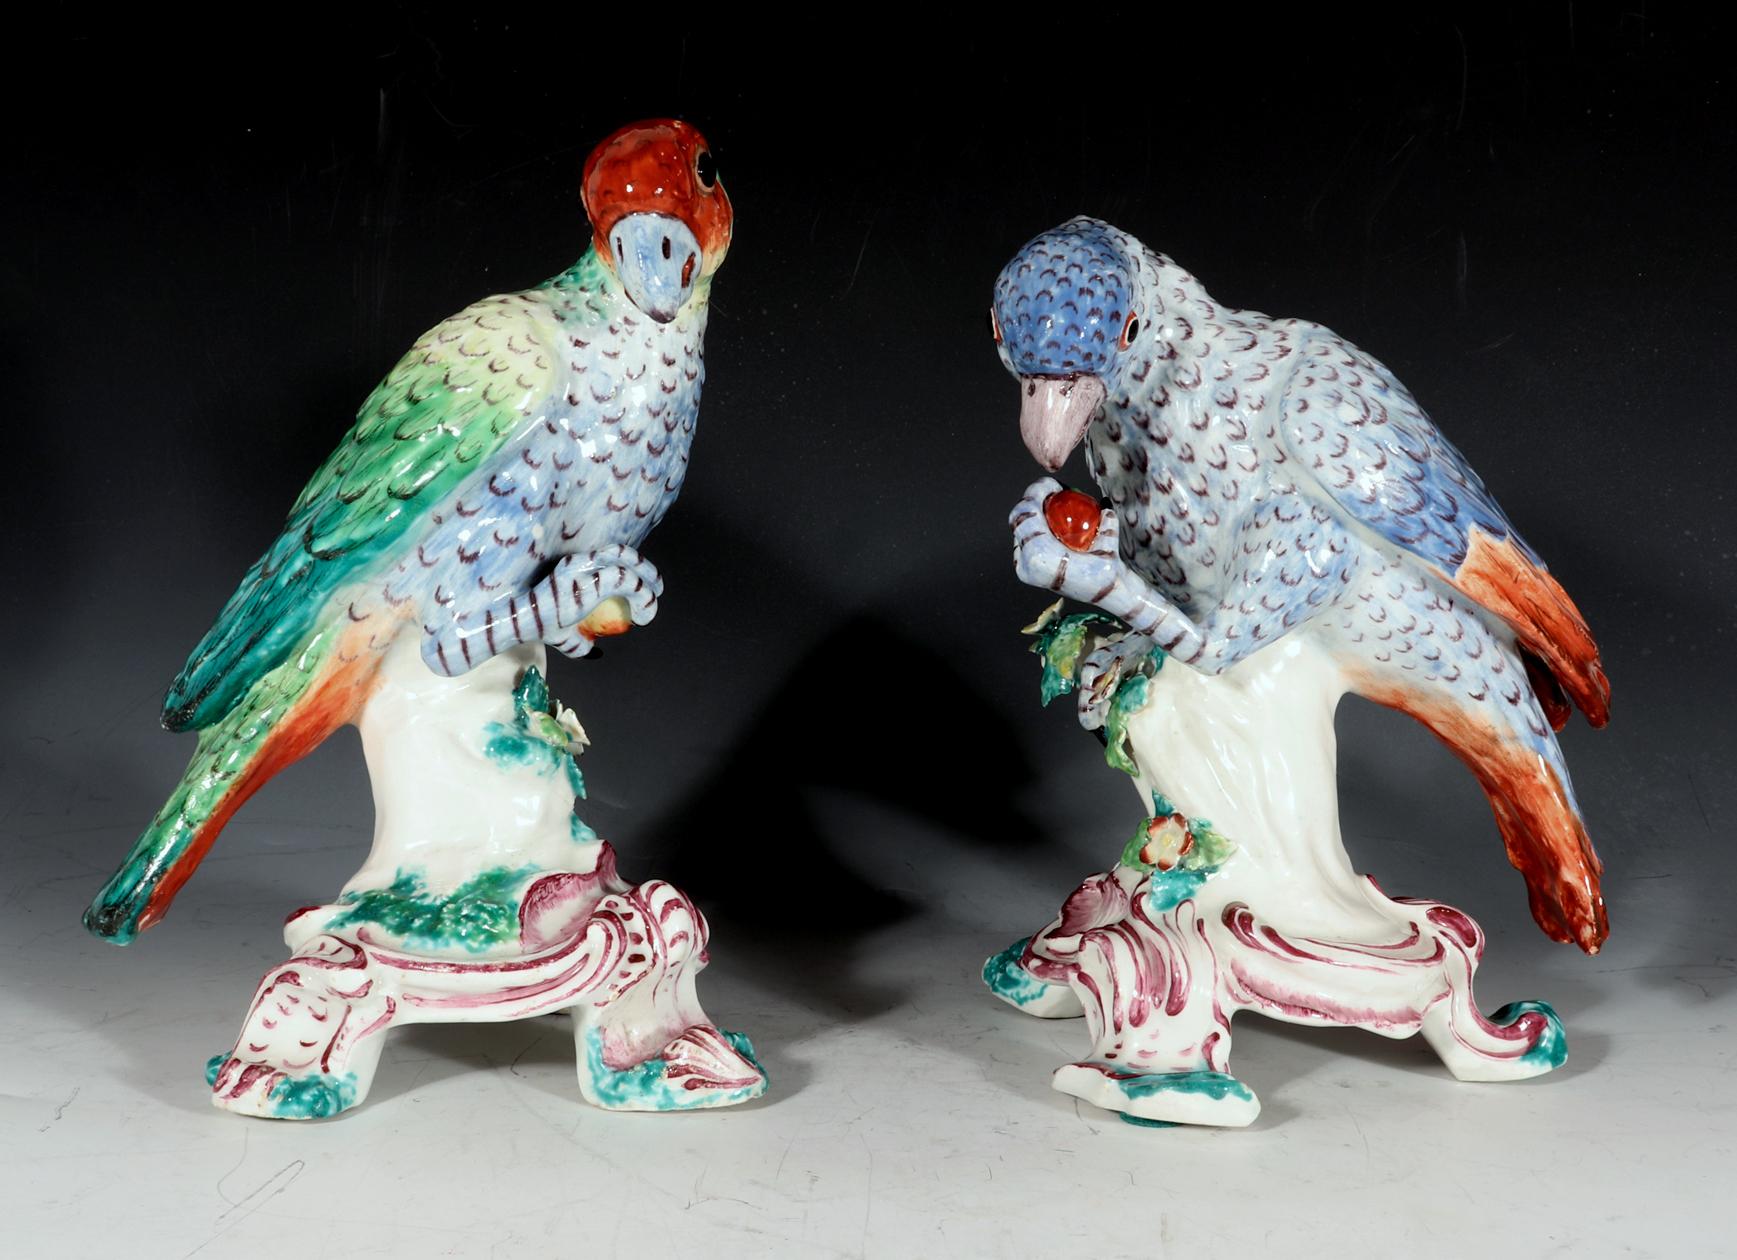 Modèles de perroquets d'Amérique du Sud en porcelaine de Chine du XVIIIe siècle,
Vers 1758-62

Ces magnifiques oiseaux en porcelaine de Bow sont modelés de manière naturaliste, chacun perché sur une souche fleurie émergeant d'une base moulée en